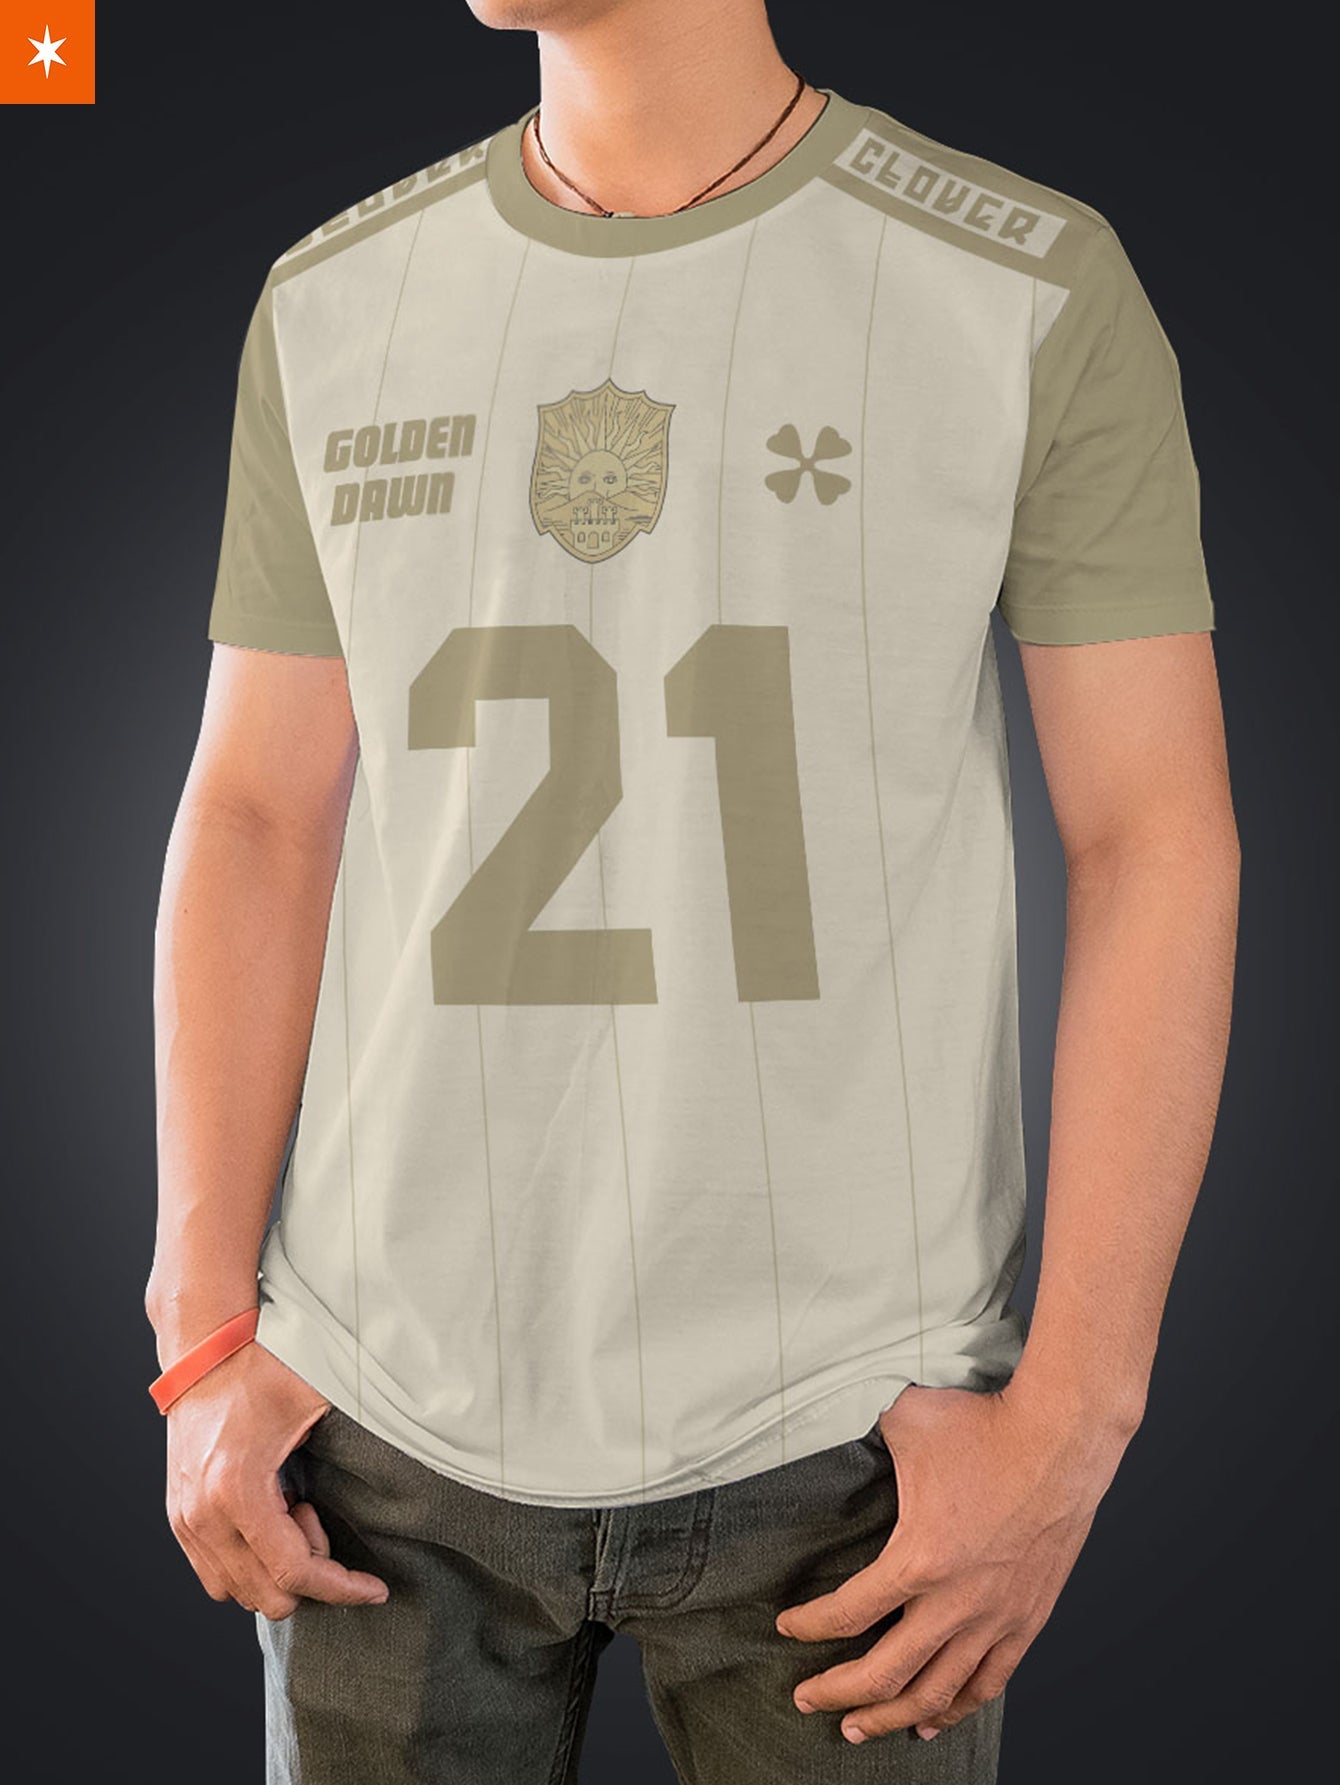 Fandomaniax - Personalized Golden Dawn Uniform Unisex T-Shirt